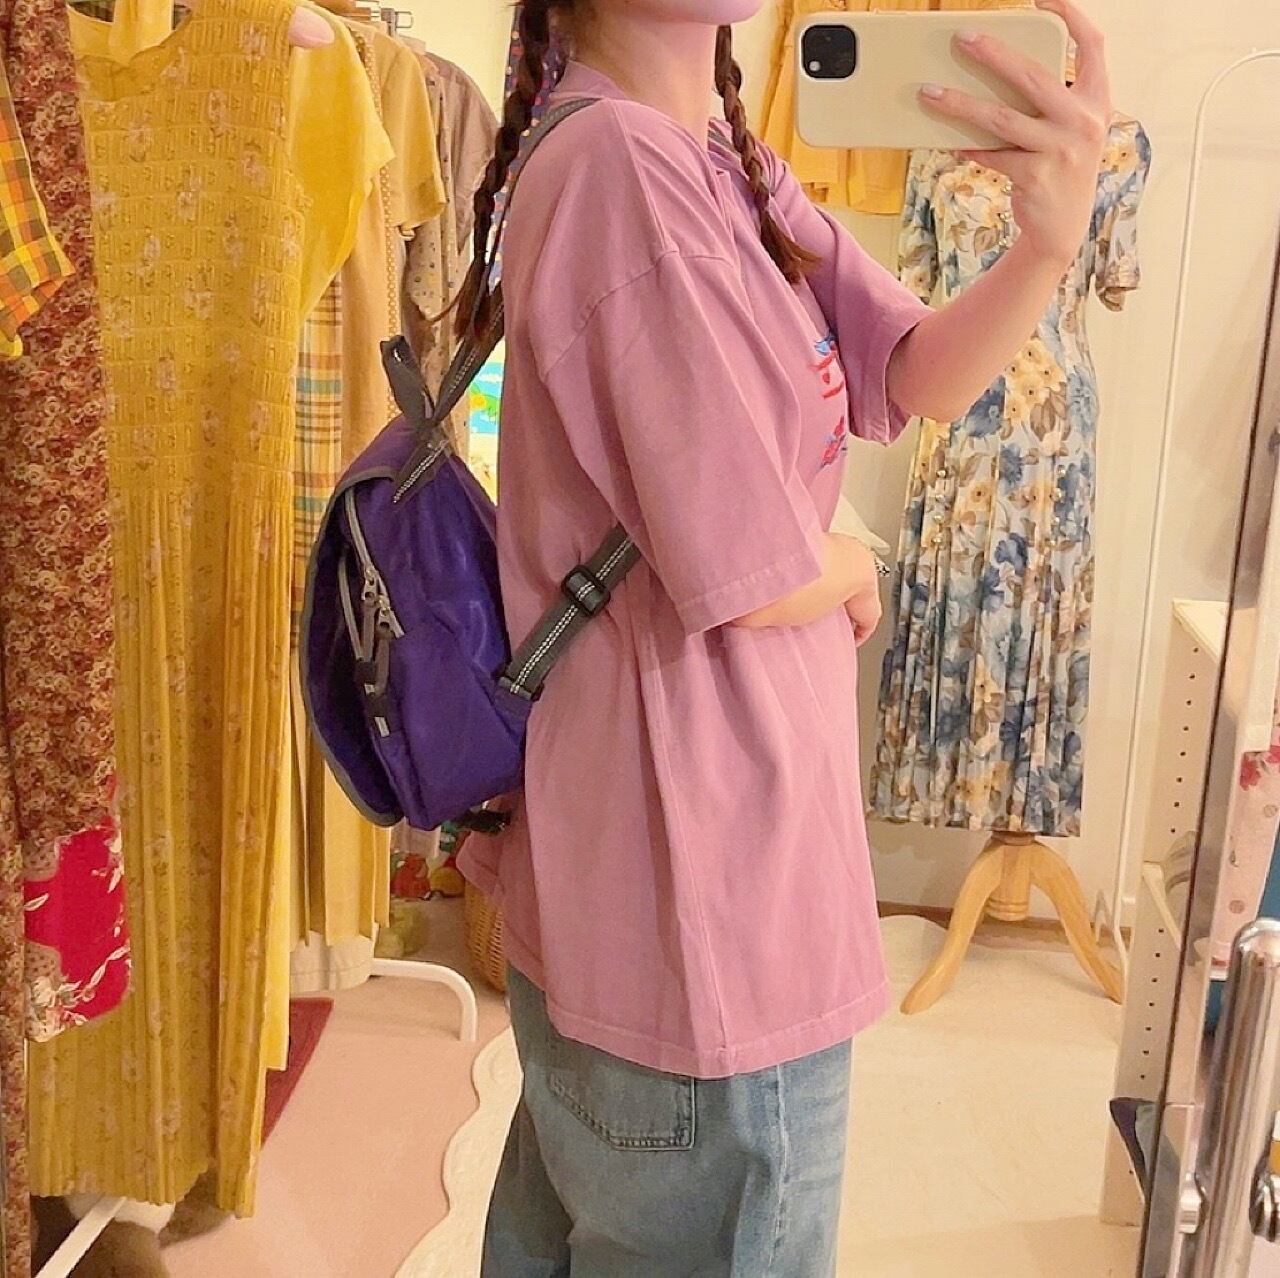 ellesse / purple mini backpack